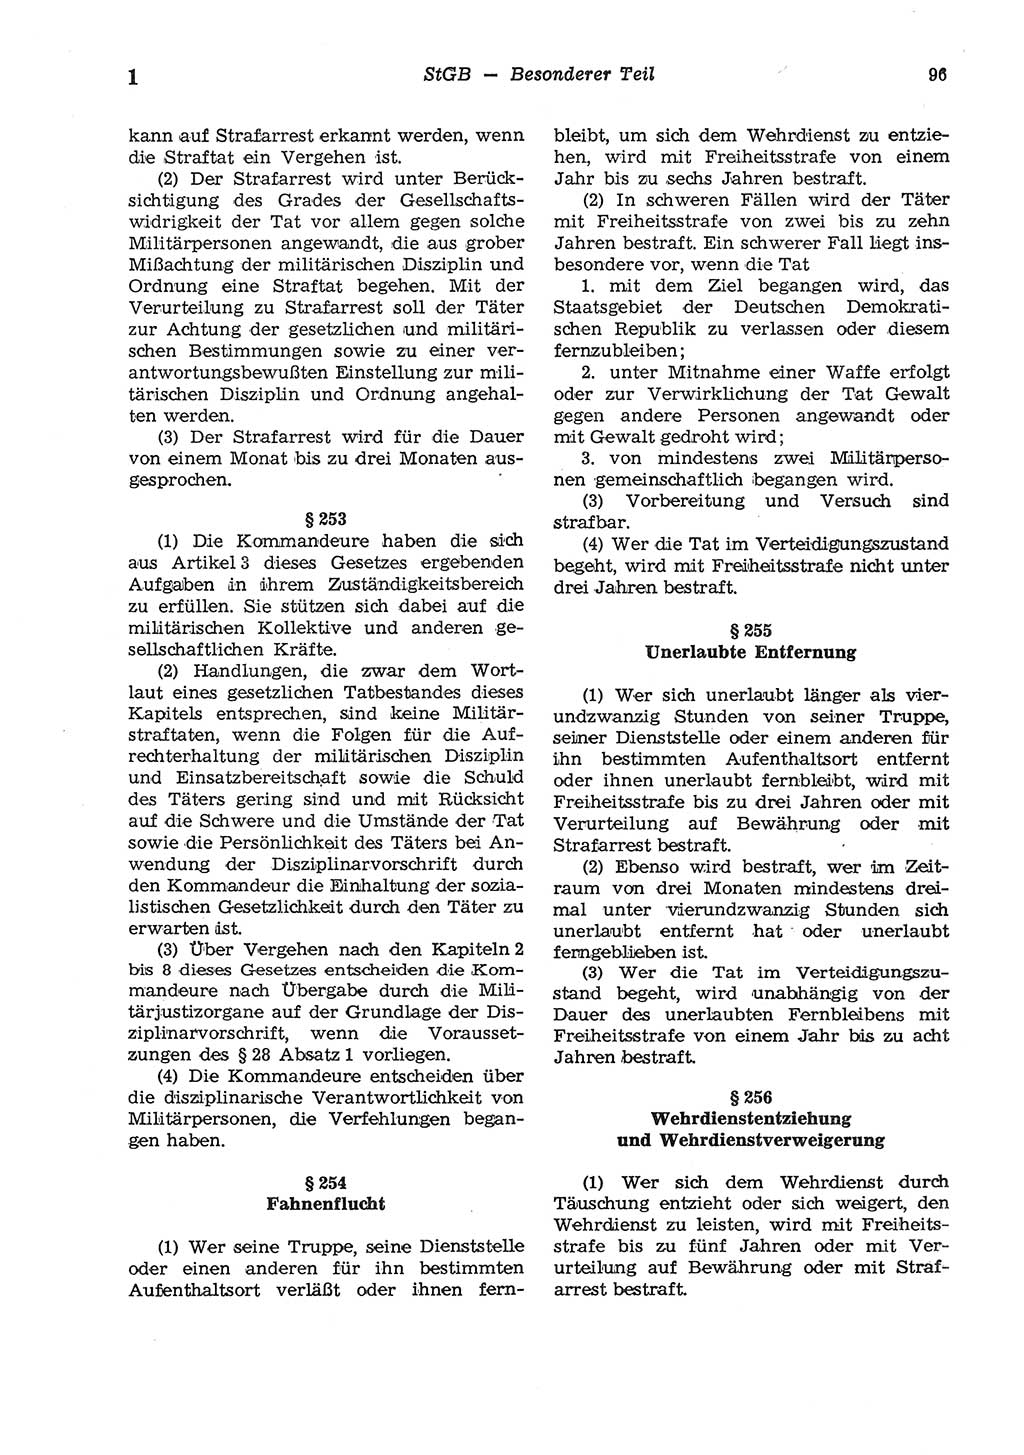 Strafgesetzbuch (StGB) der Deutschen Demokratischen Republik (DDR) und angrenzende Gesetze und Bestimmungen 1975, Seite 96 (StGB DDR Ges. Best. 1975, S. 96)